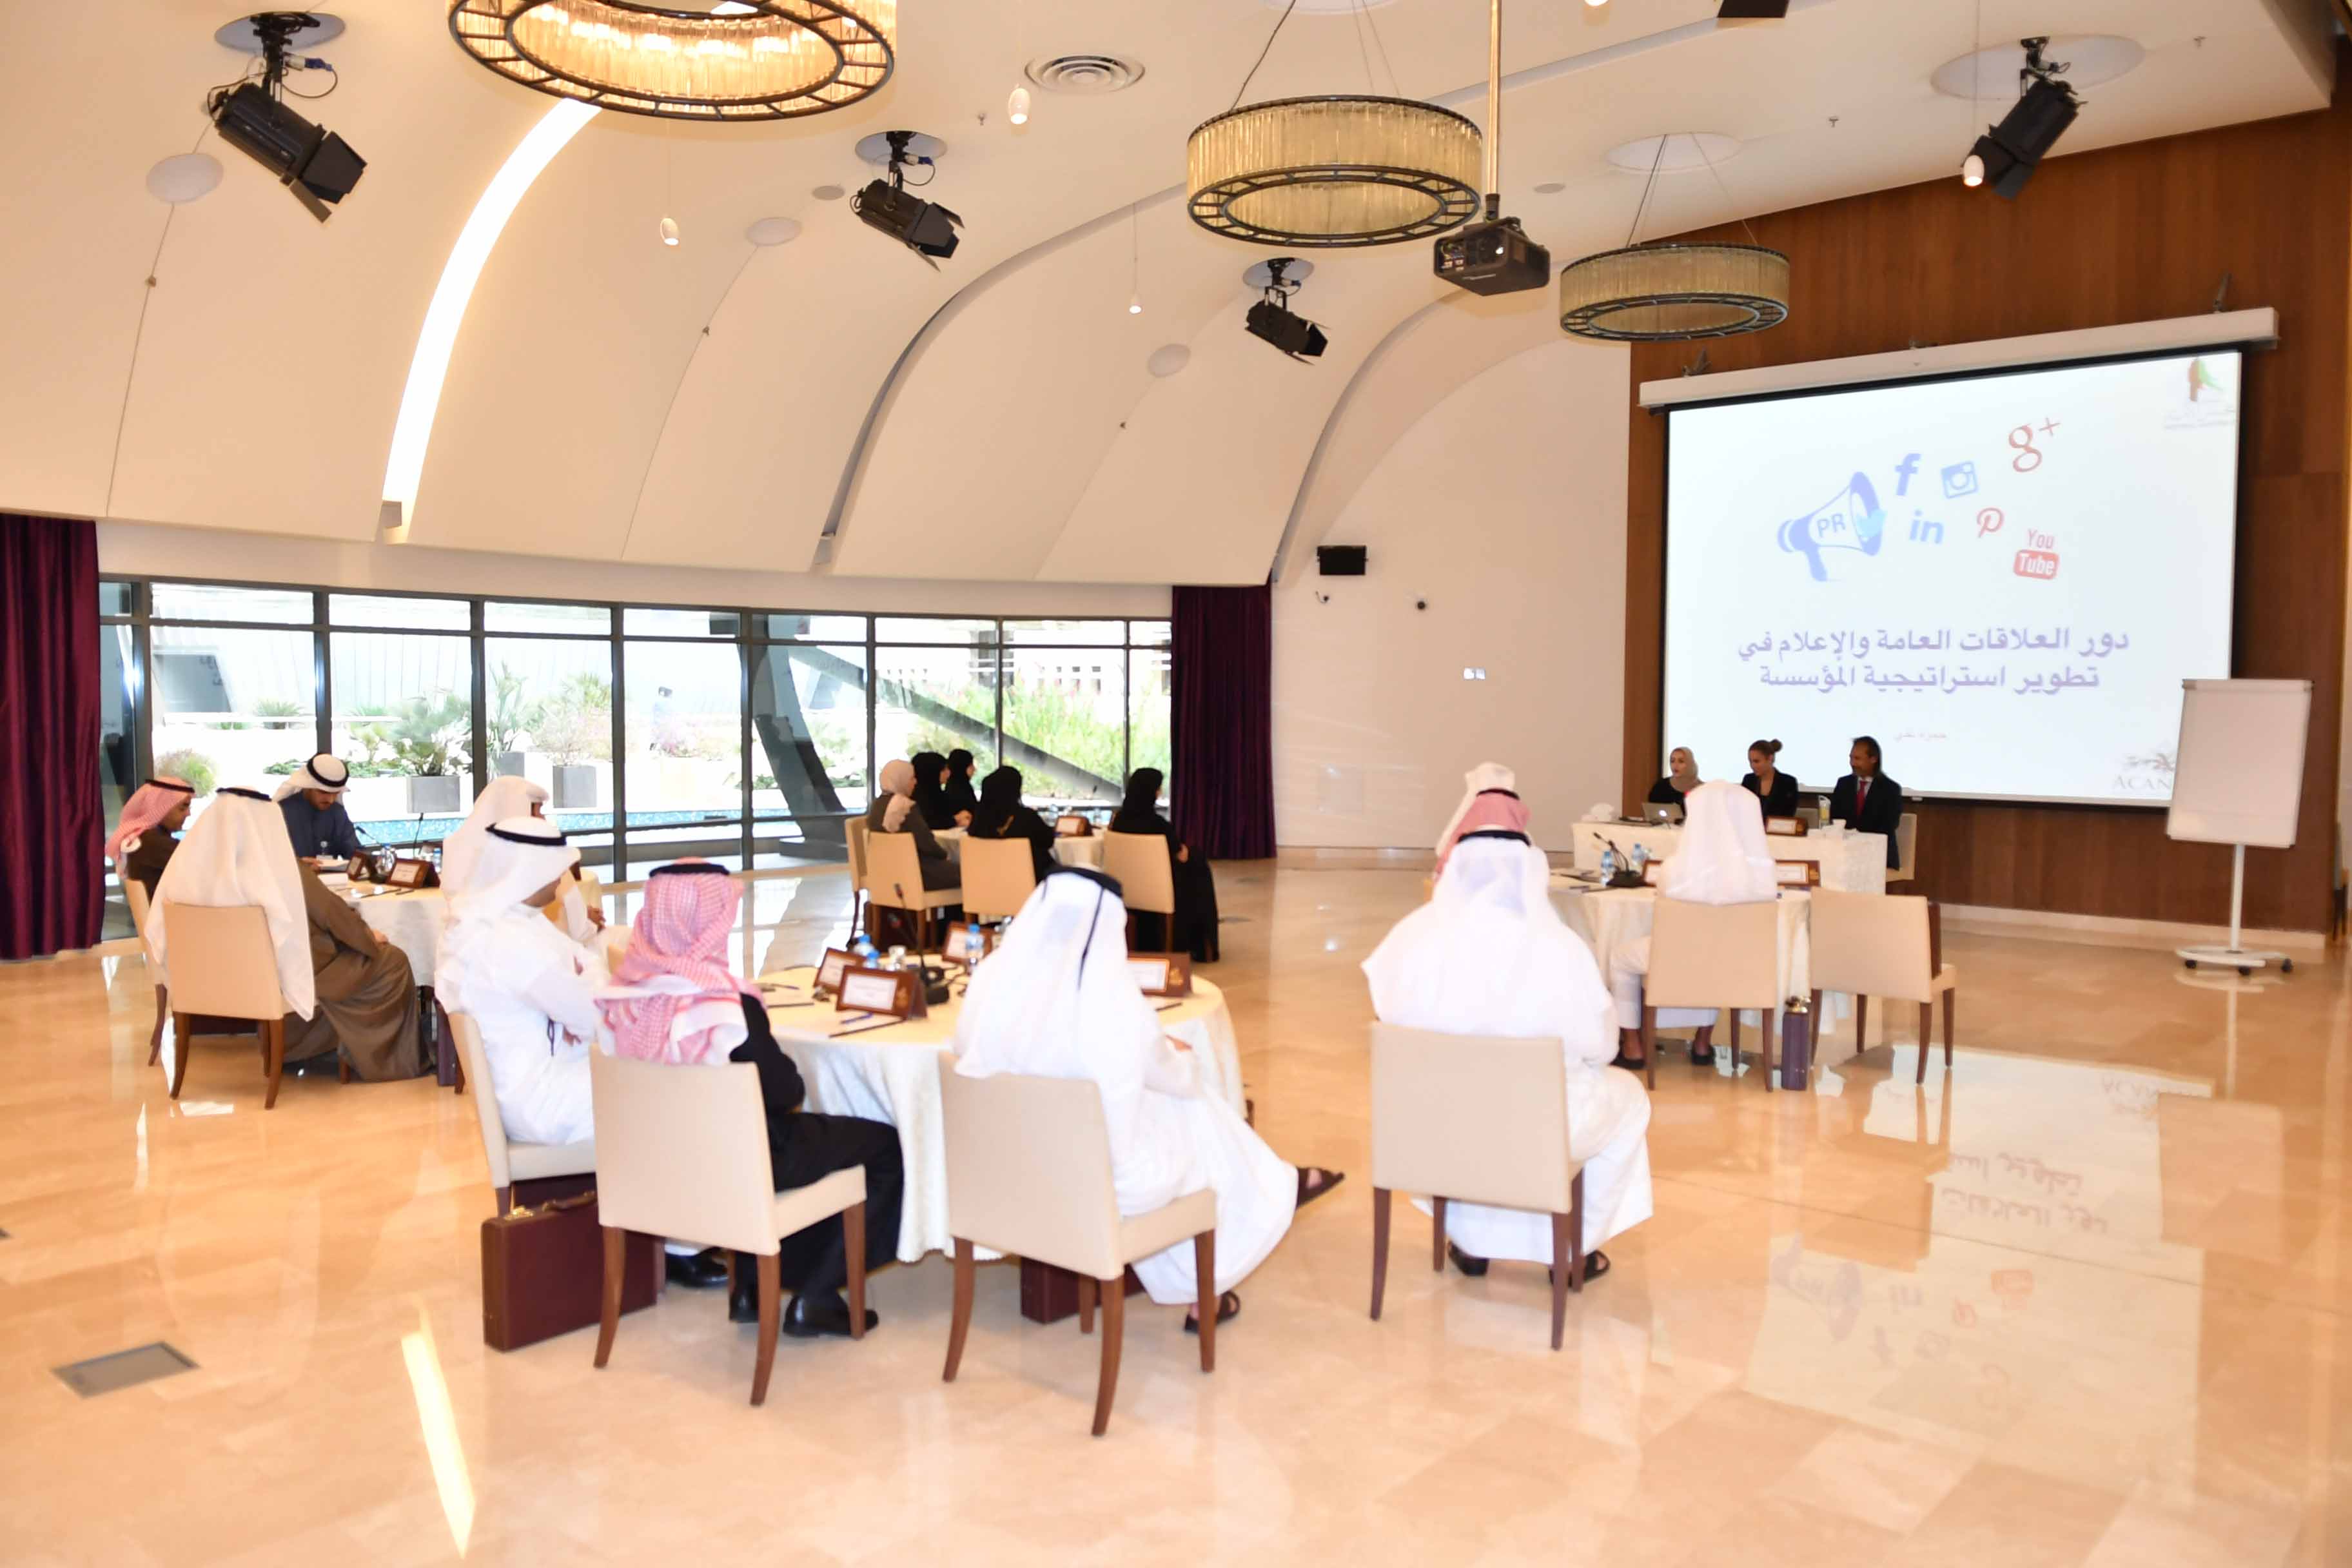   المشاركون ببرنامج «الدبلوماسية البرلمانية» يؤكدون أهمية البرنامج في تطوير عمل الامانات العامة الخليجية